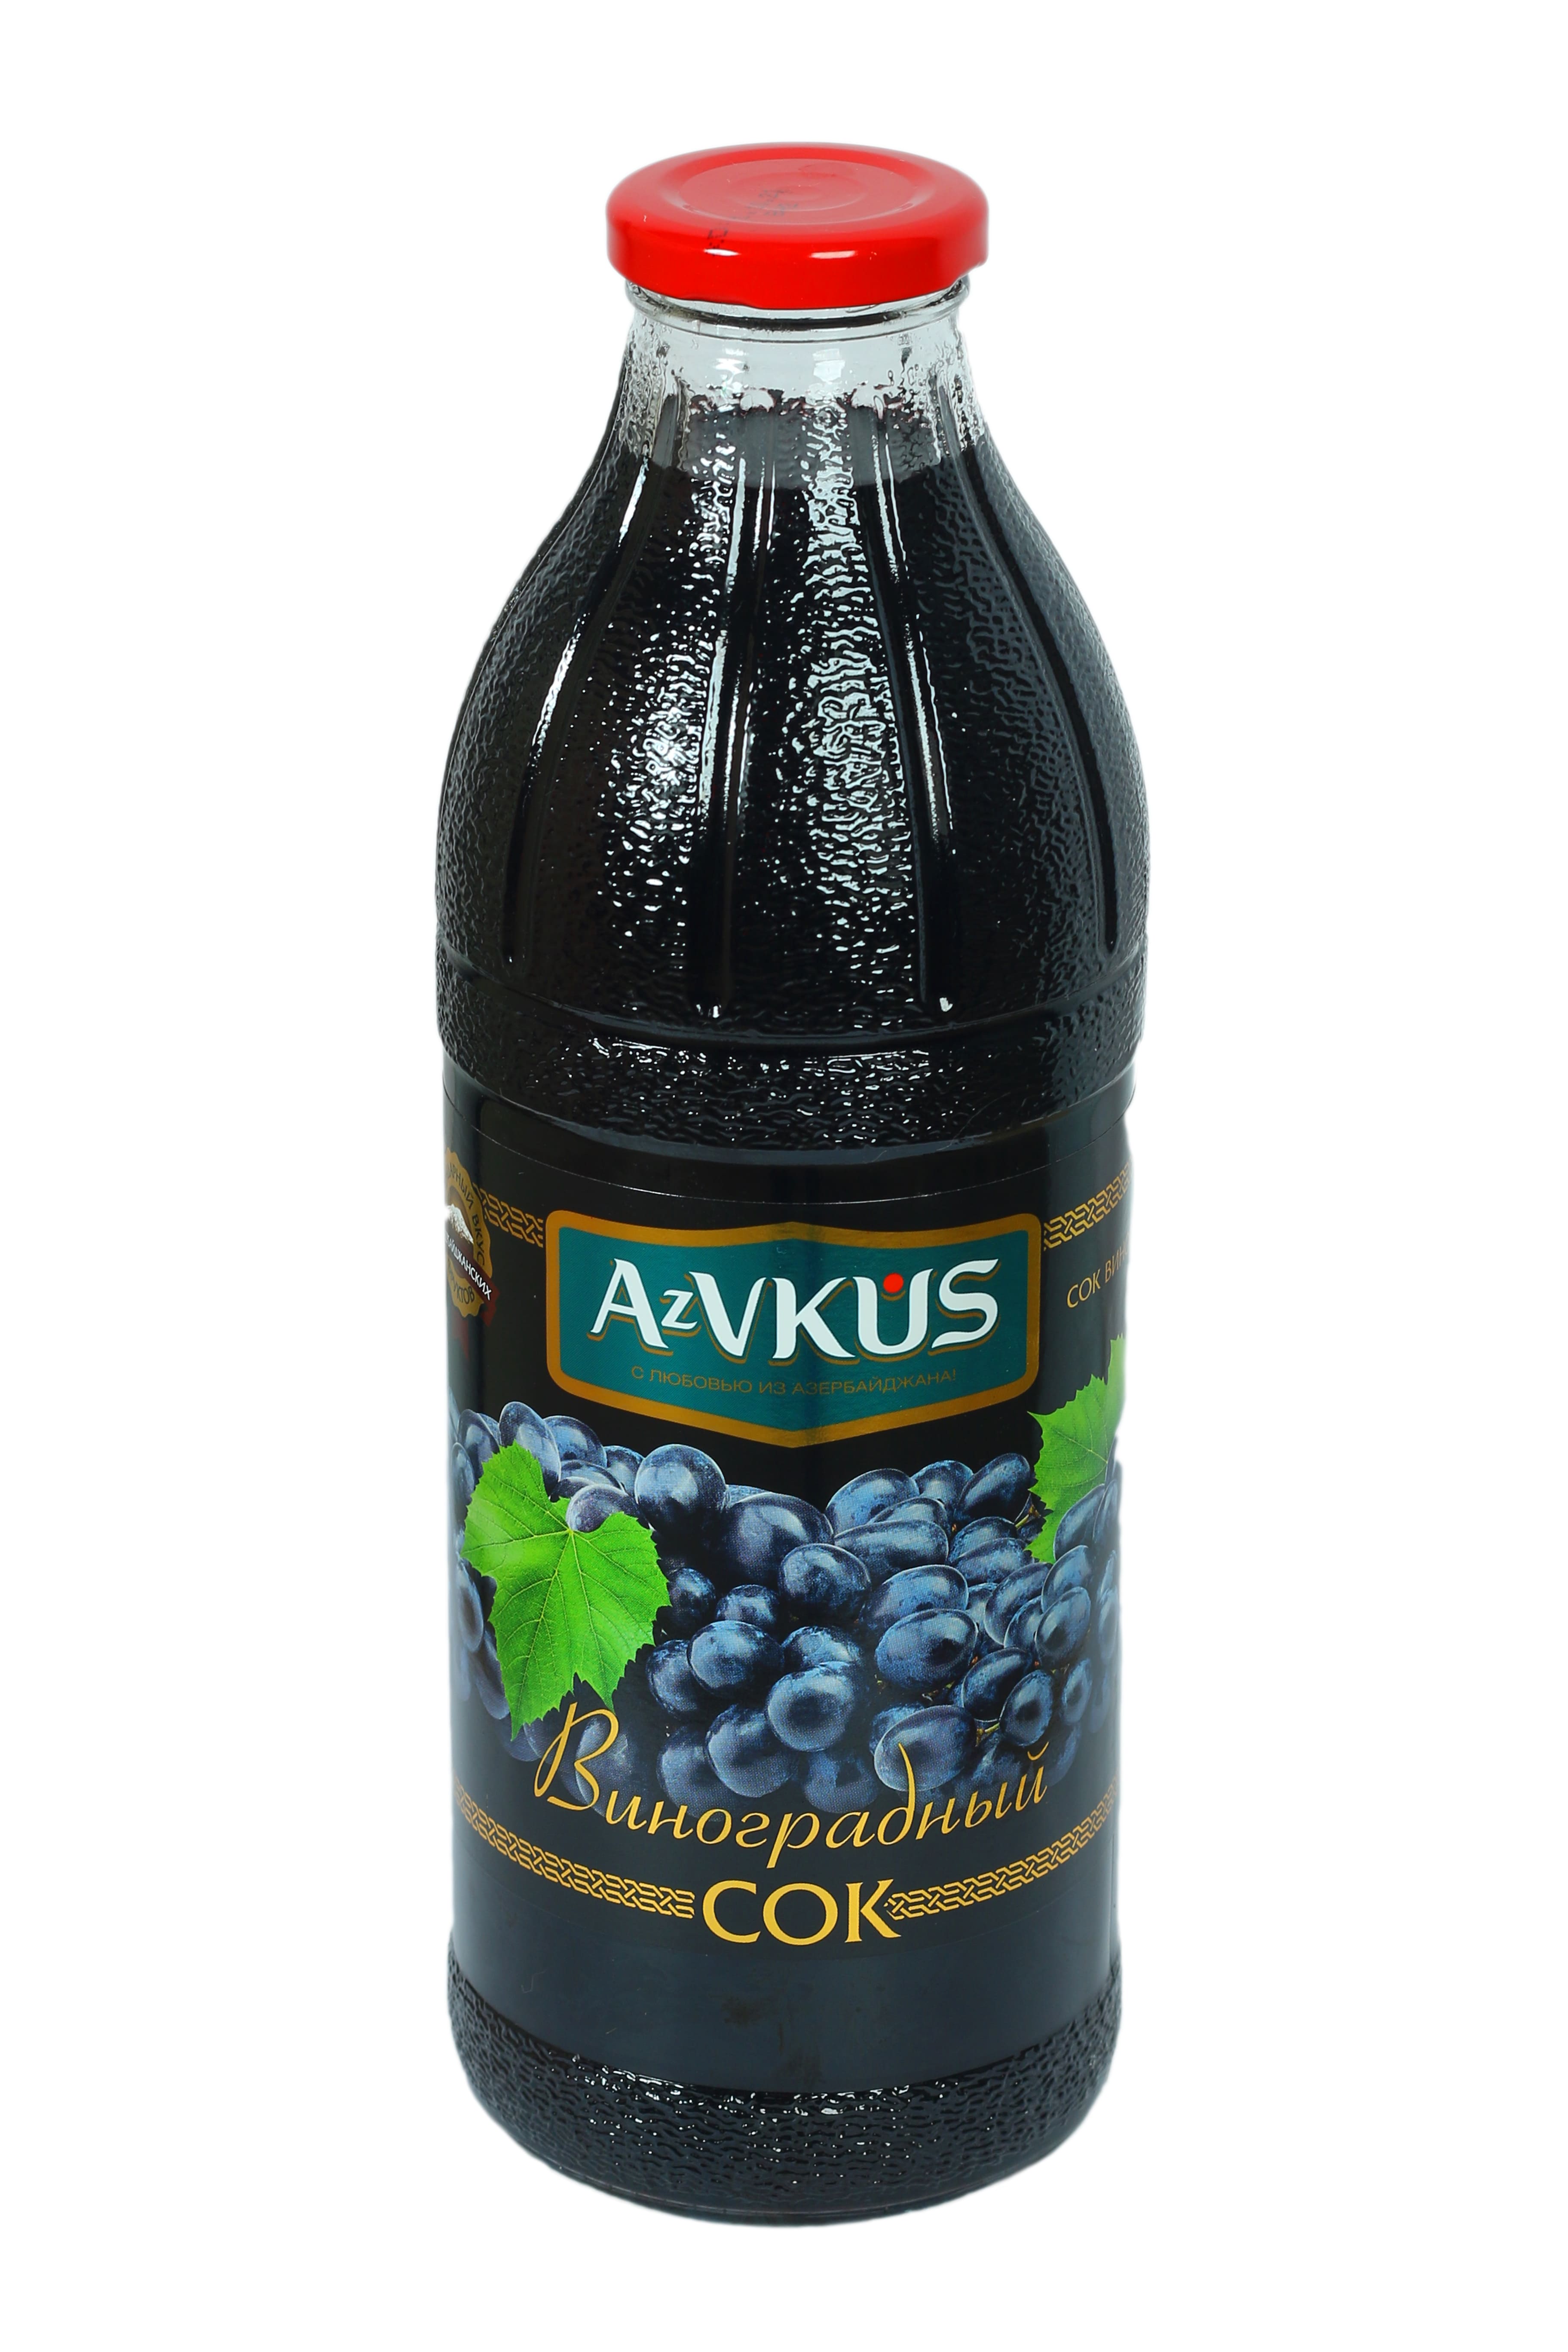 Виноградный сок состав. Сок "АЗВКУС" виноградный 1л. AZVKUS виноградный. Сок виноград AZVKUS 1л.